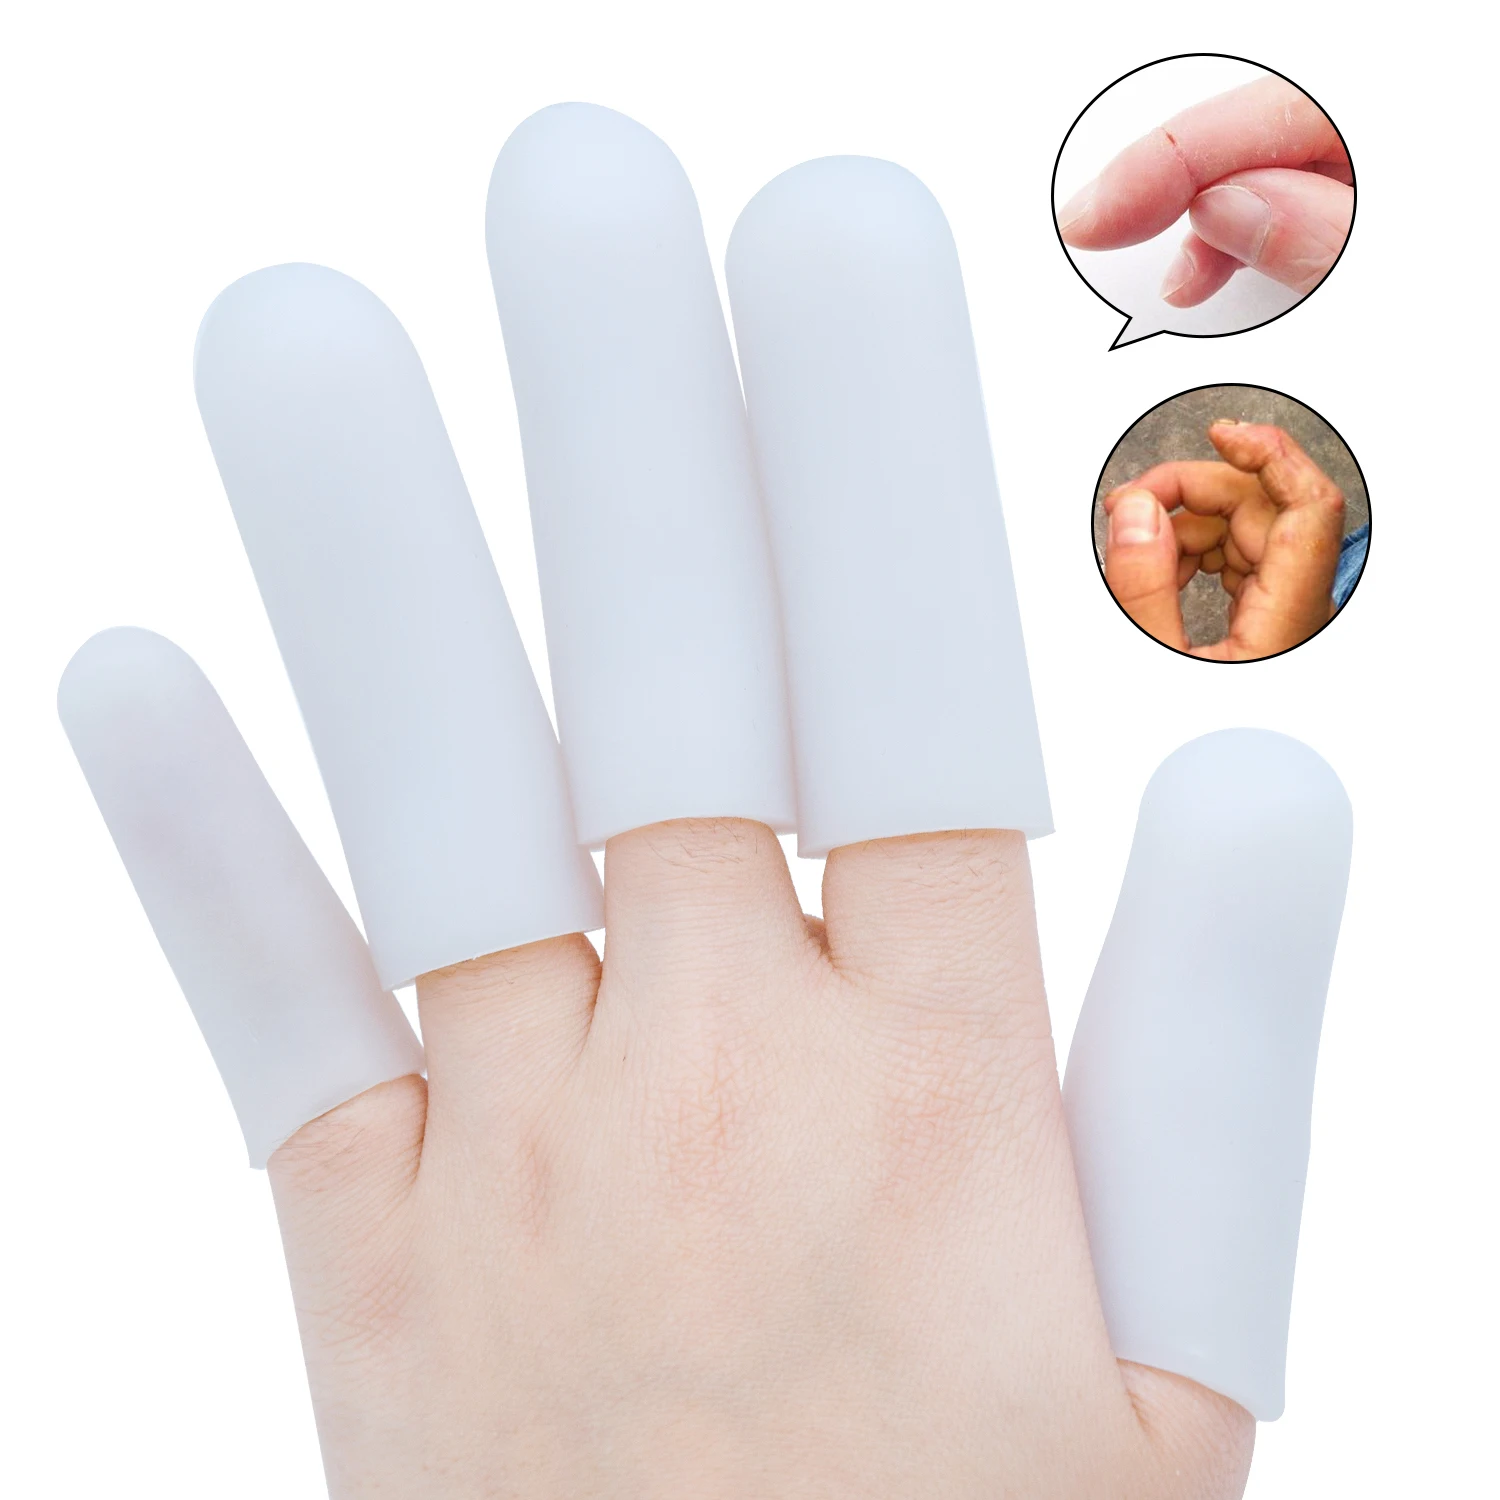 2 шт. силиконовые накладки на большие пальцы 3x6 7 см | Красота и здоровье